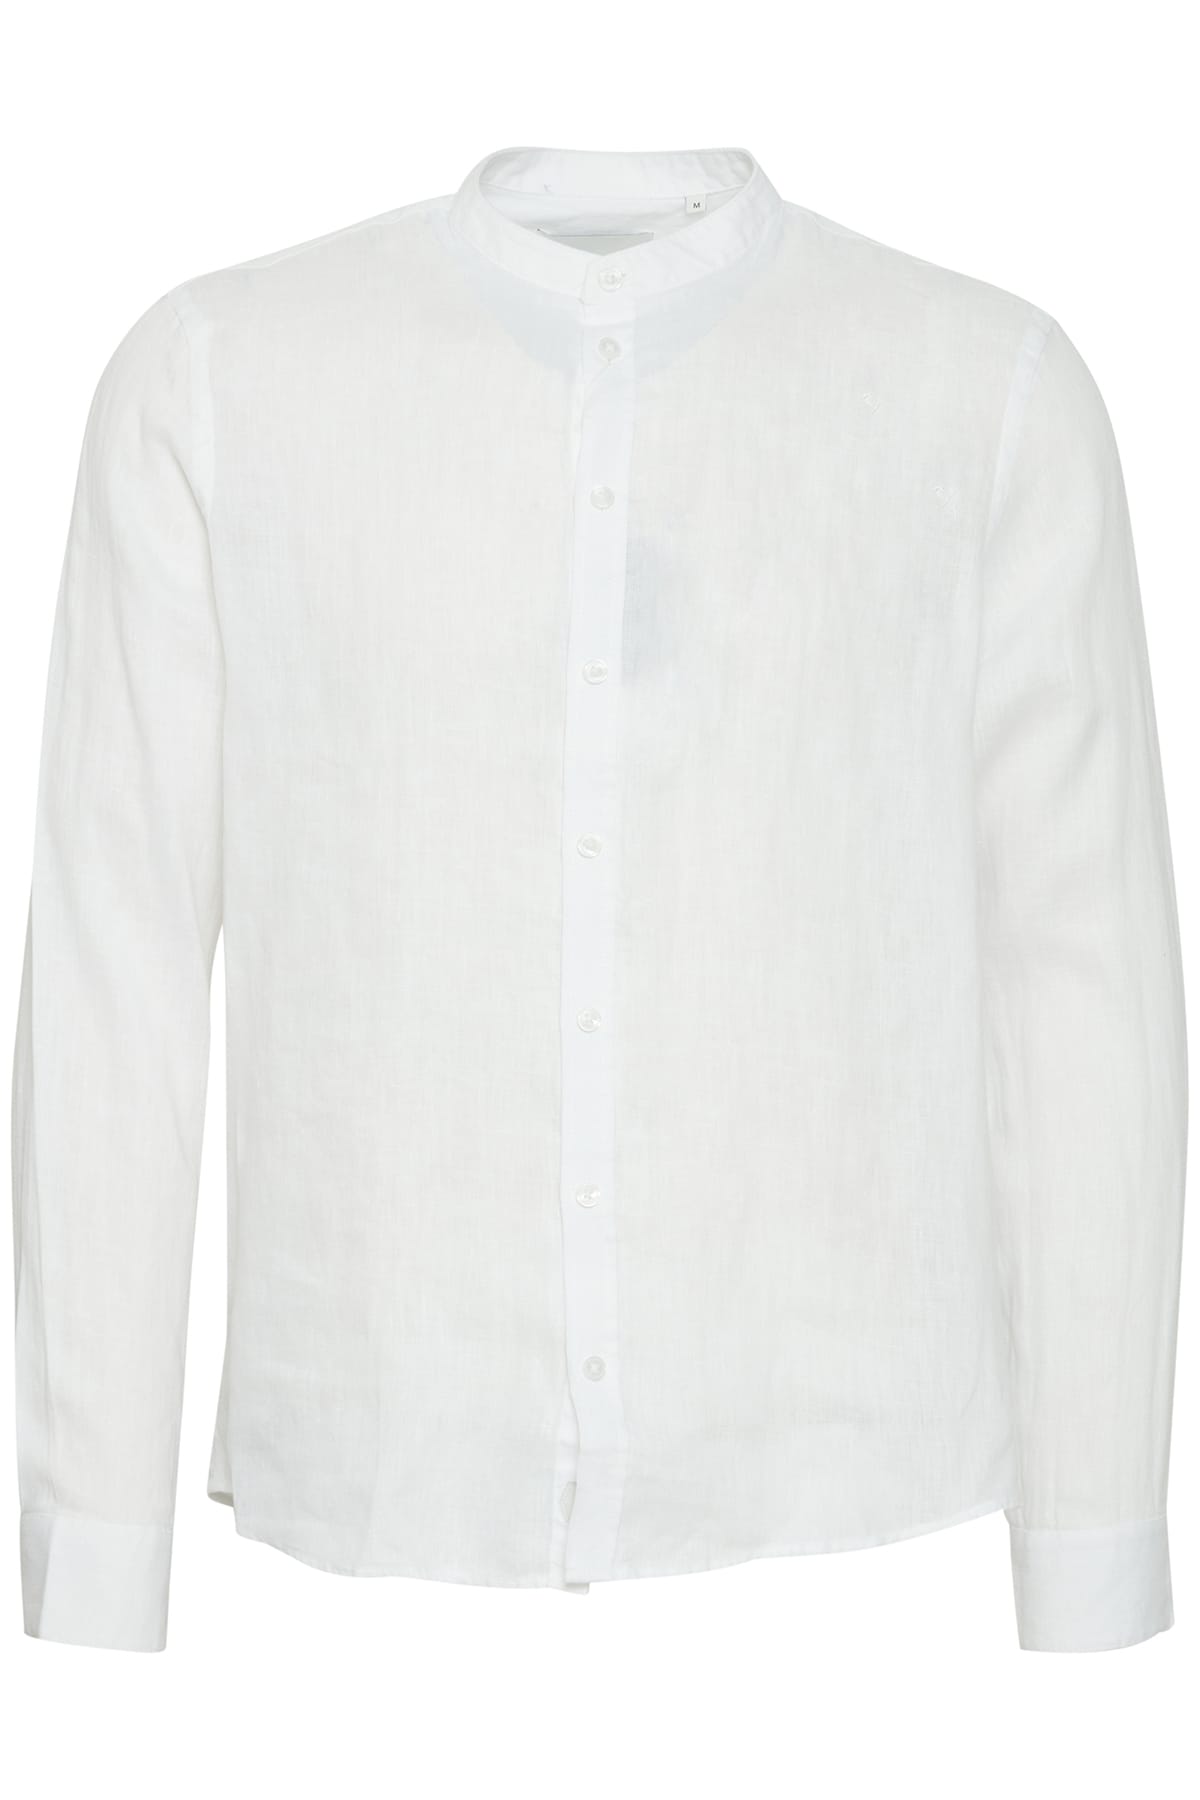 Hemd Anton LS CC linen shirt Bright White Hemd Casual Friday 